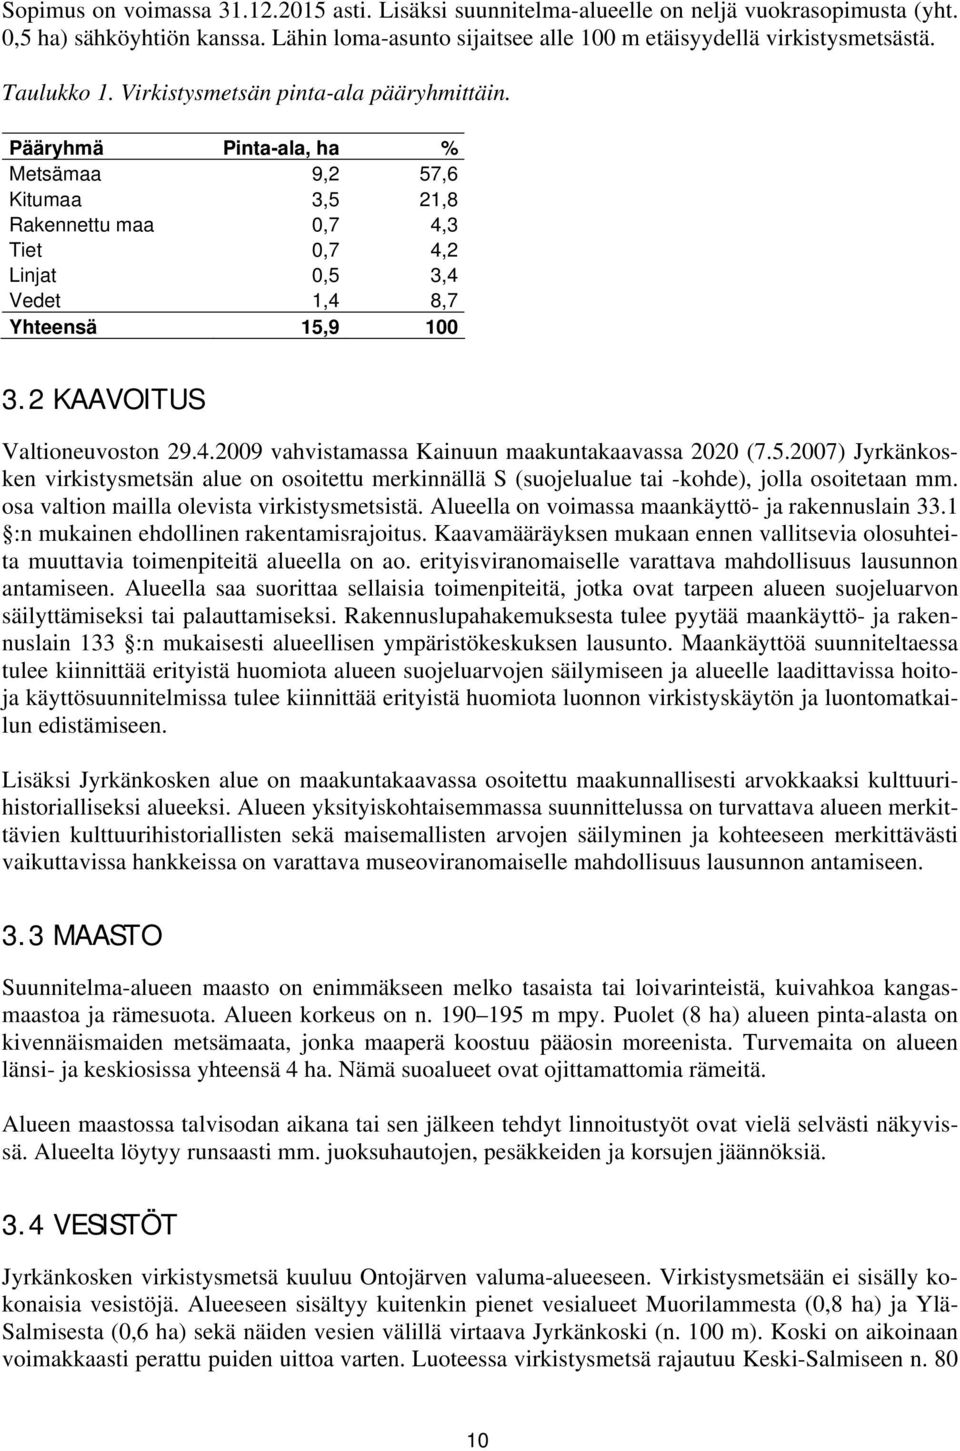 2 KAAVOITUS Valtioneuvoston 29.4.2009 vahvistamassa Kainuun maakuntakaavassa 2020 (7.5.2007) Jyrkänkosken virkistysmetsän alue on osoitettu merkinnällä S (suojelualue tai -kohde), jolla osoitetaan mm.